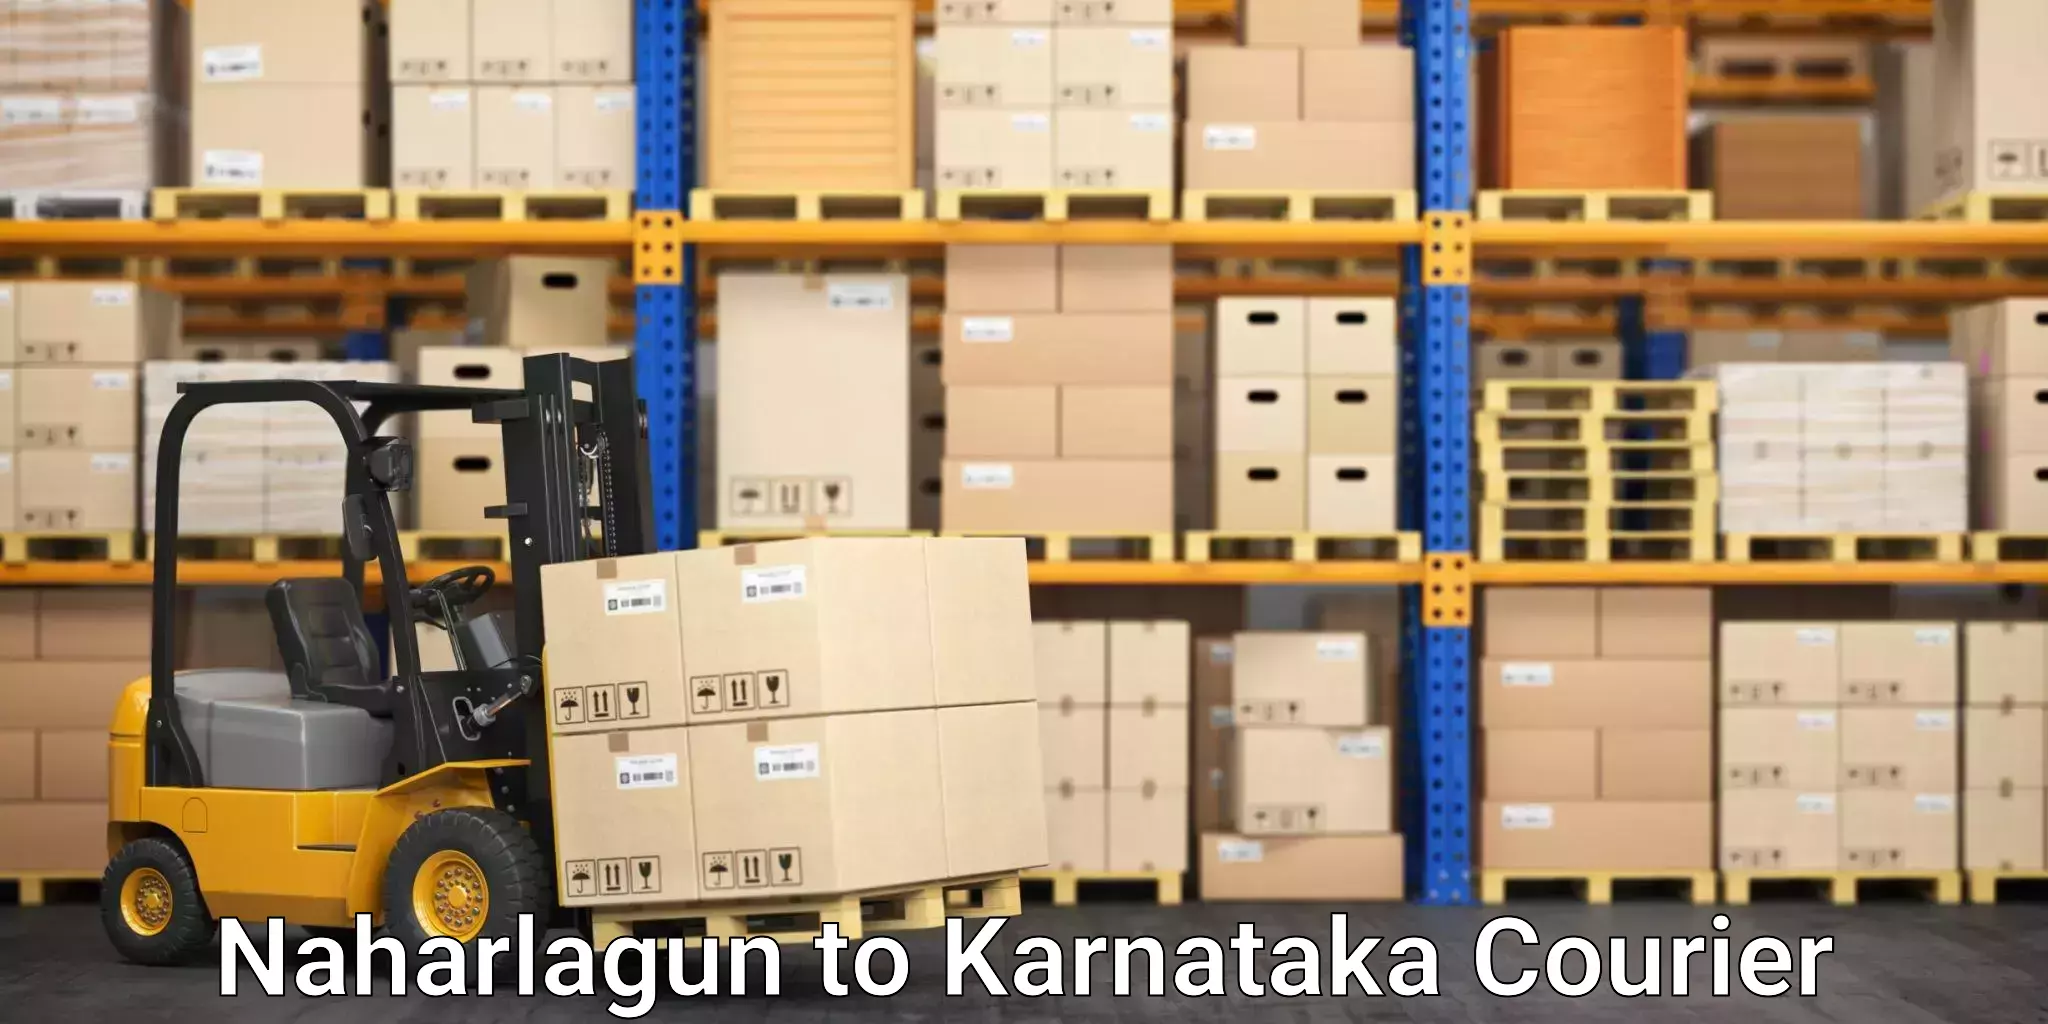 Premium courier solutions Naharlagun to Belgaum